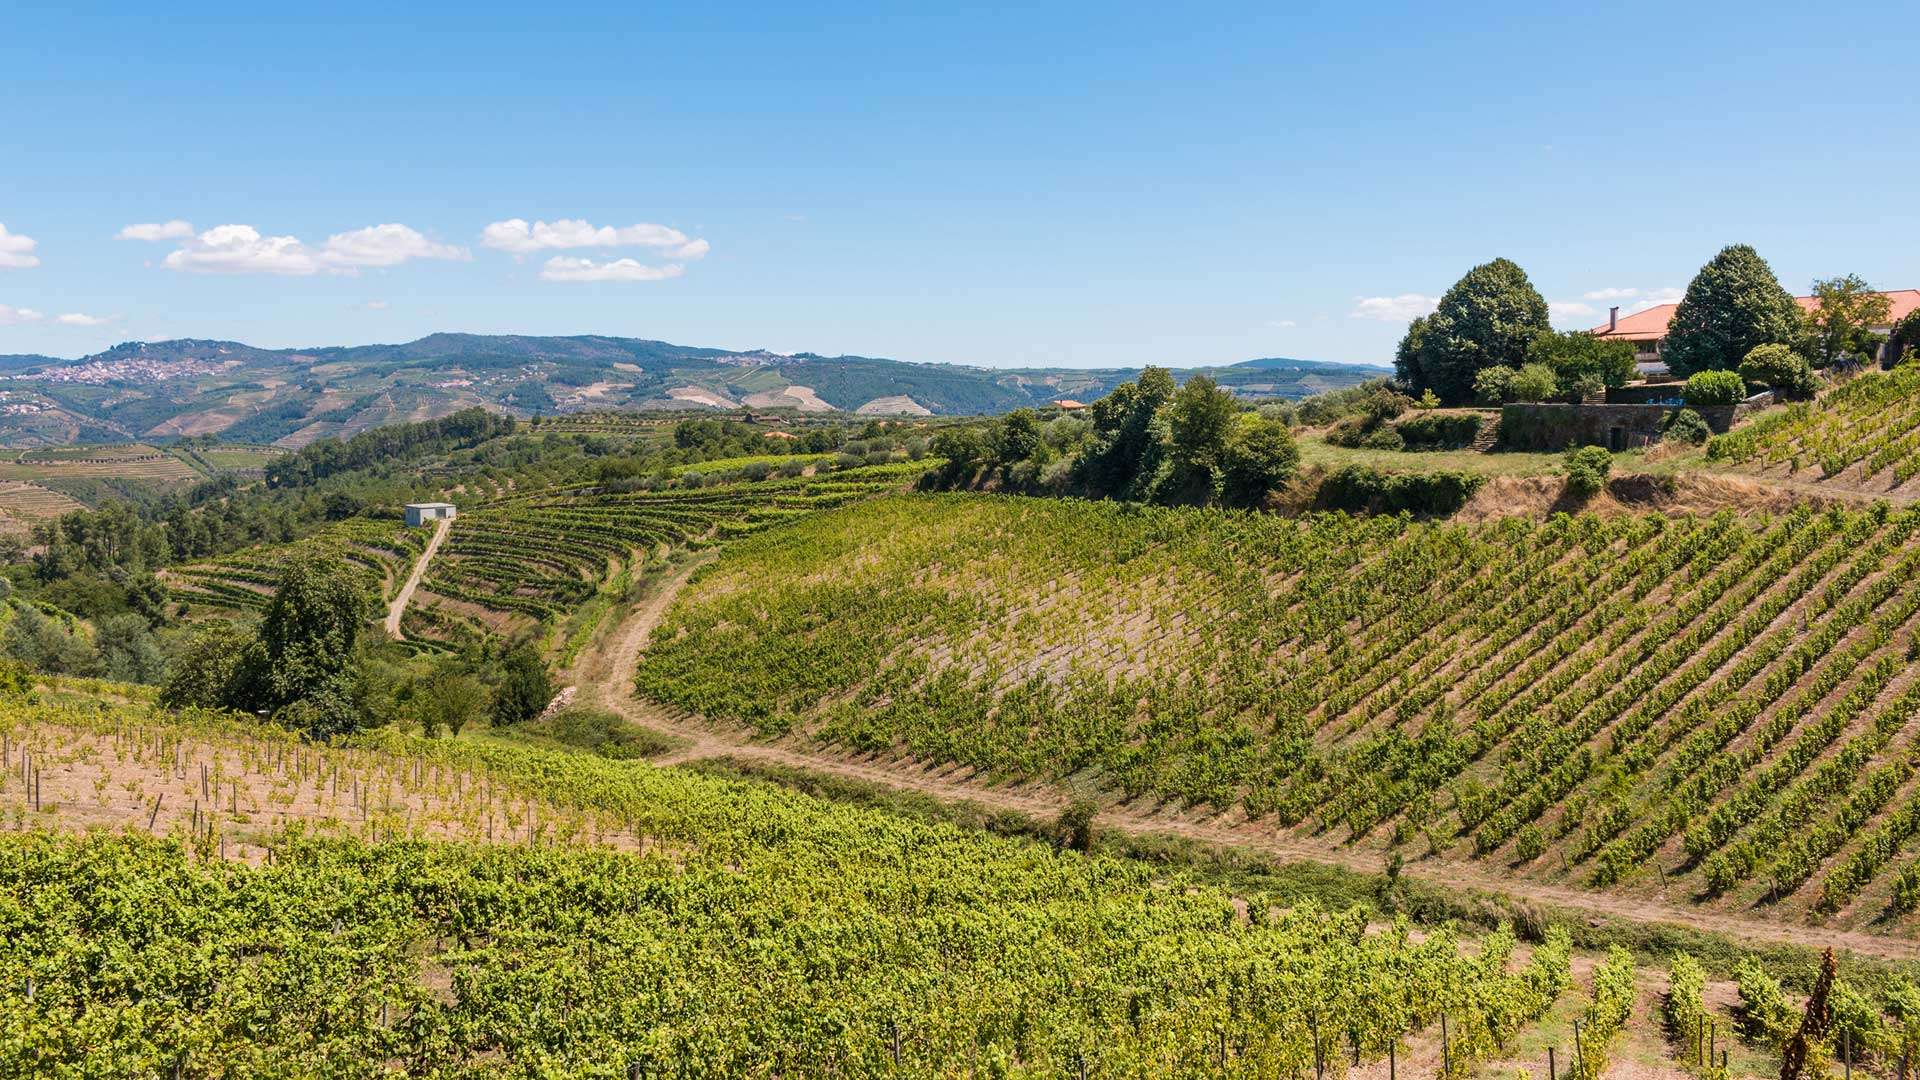 Vin et héritage architectural, découvrez les régions productrices de vins au Portugal en vous logeant dans des manoirs ayant appartenus à la grande bourgeoisie ou à l’aristocratie portugaise.